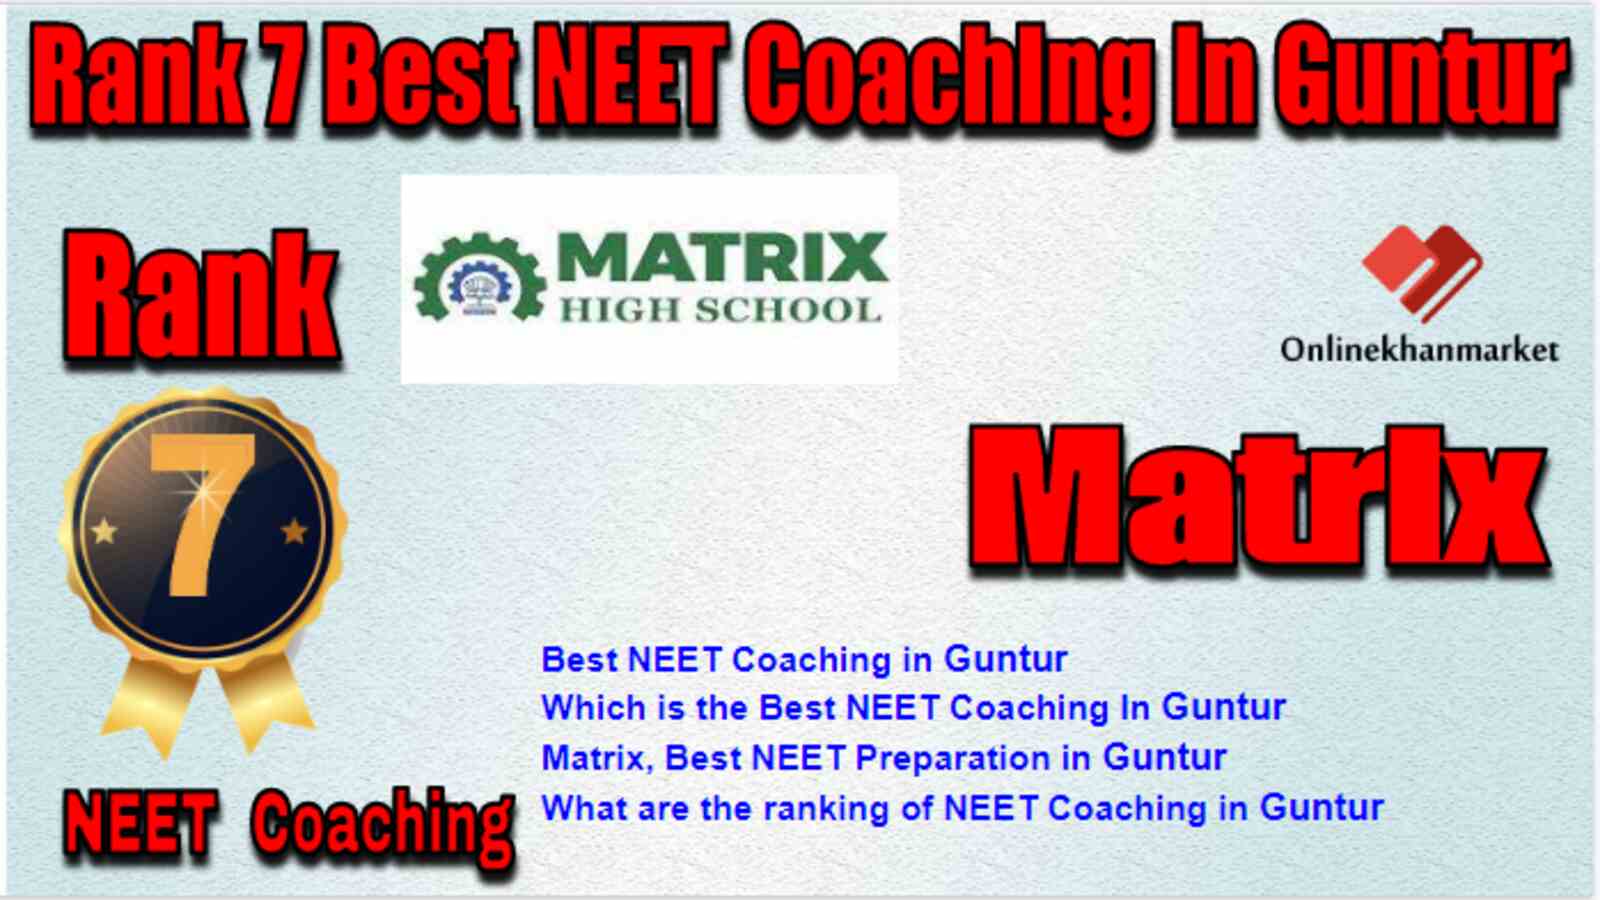 Rank 7 Best NEET Coaching in Guntur